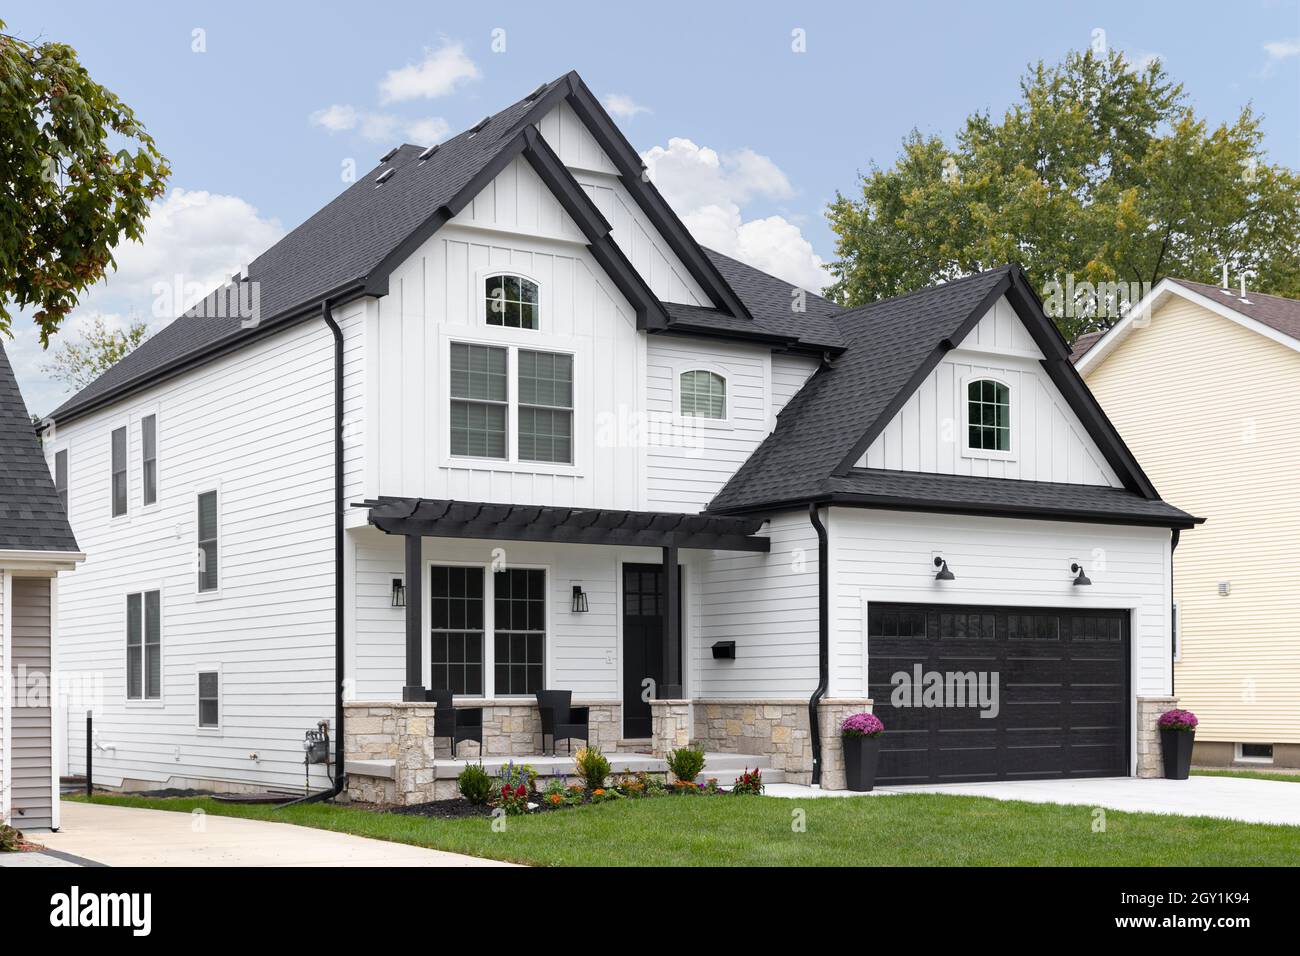 Ein traditionelles, modernes Bauernhaus mit weißem Dach, schwarzem Dach und Garagentor und einer überdachten Veranda. Stockfoto